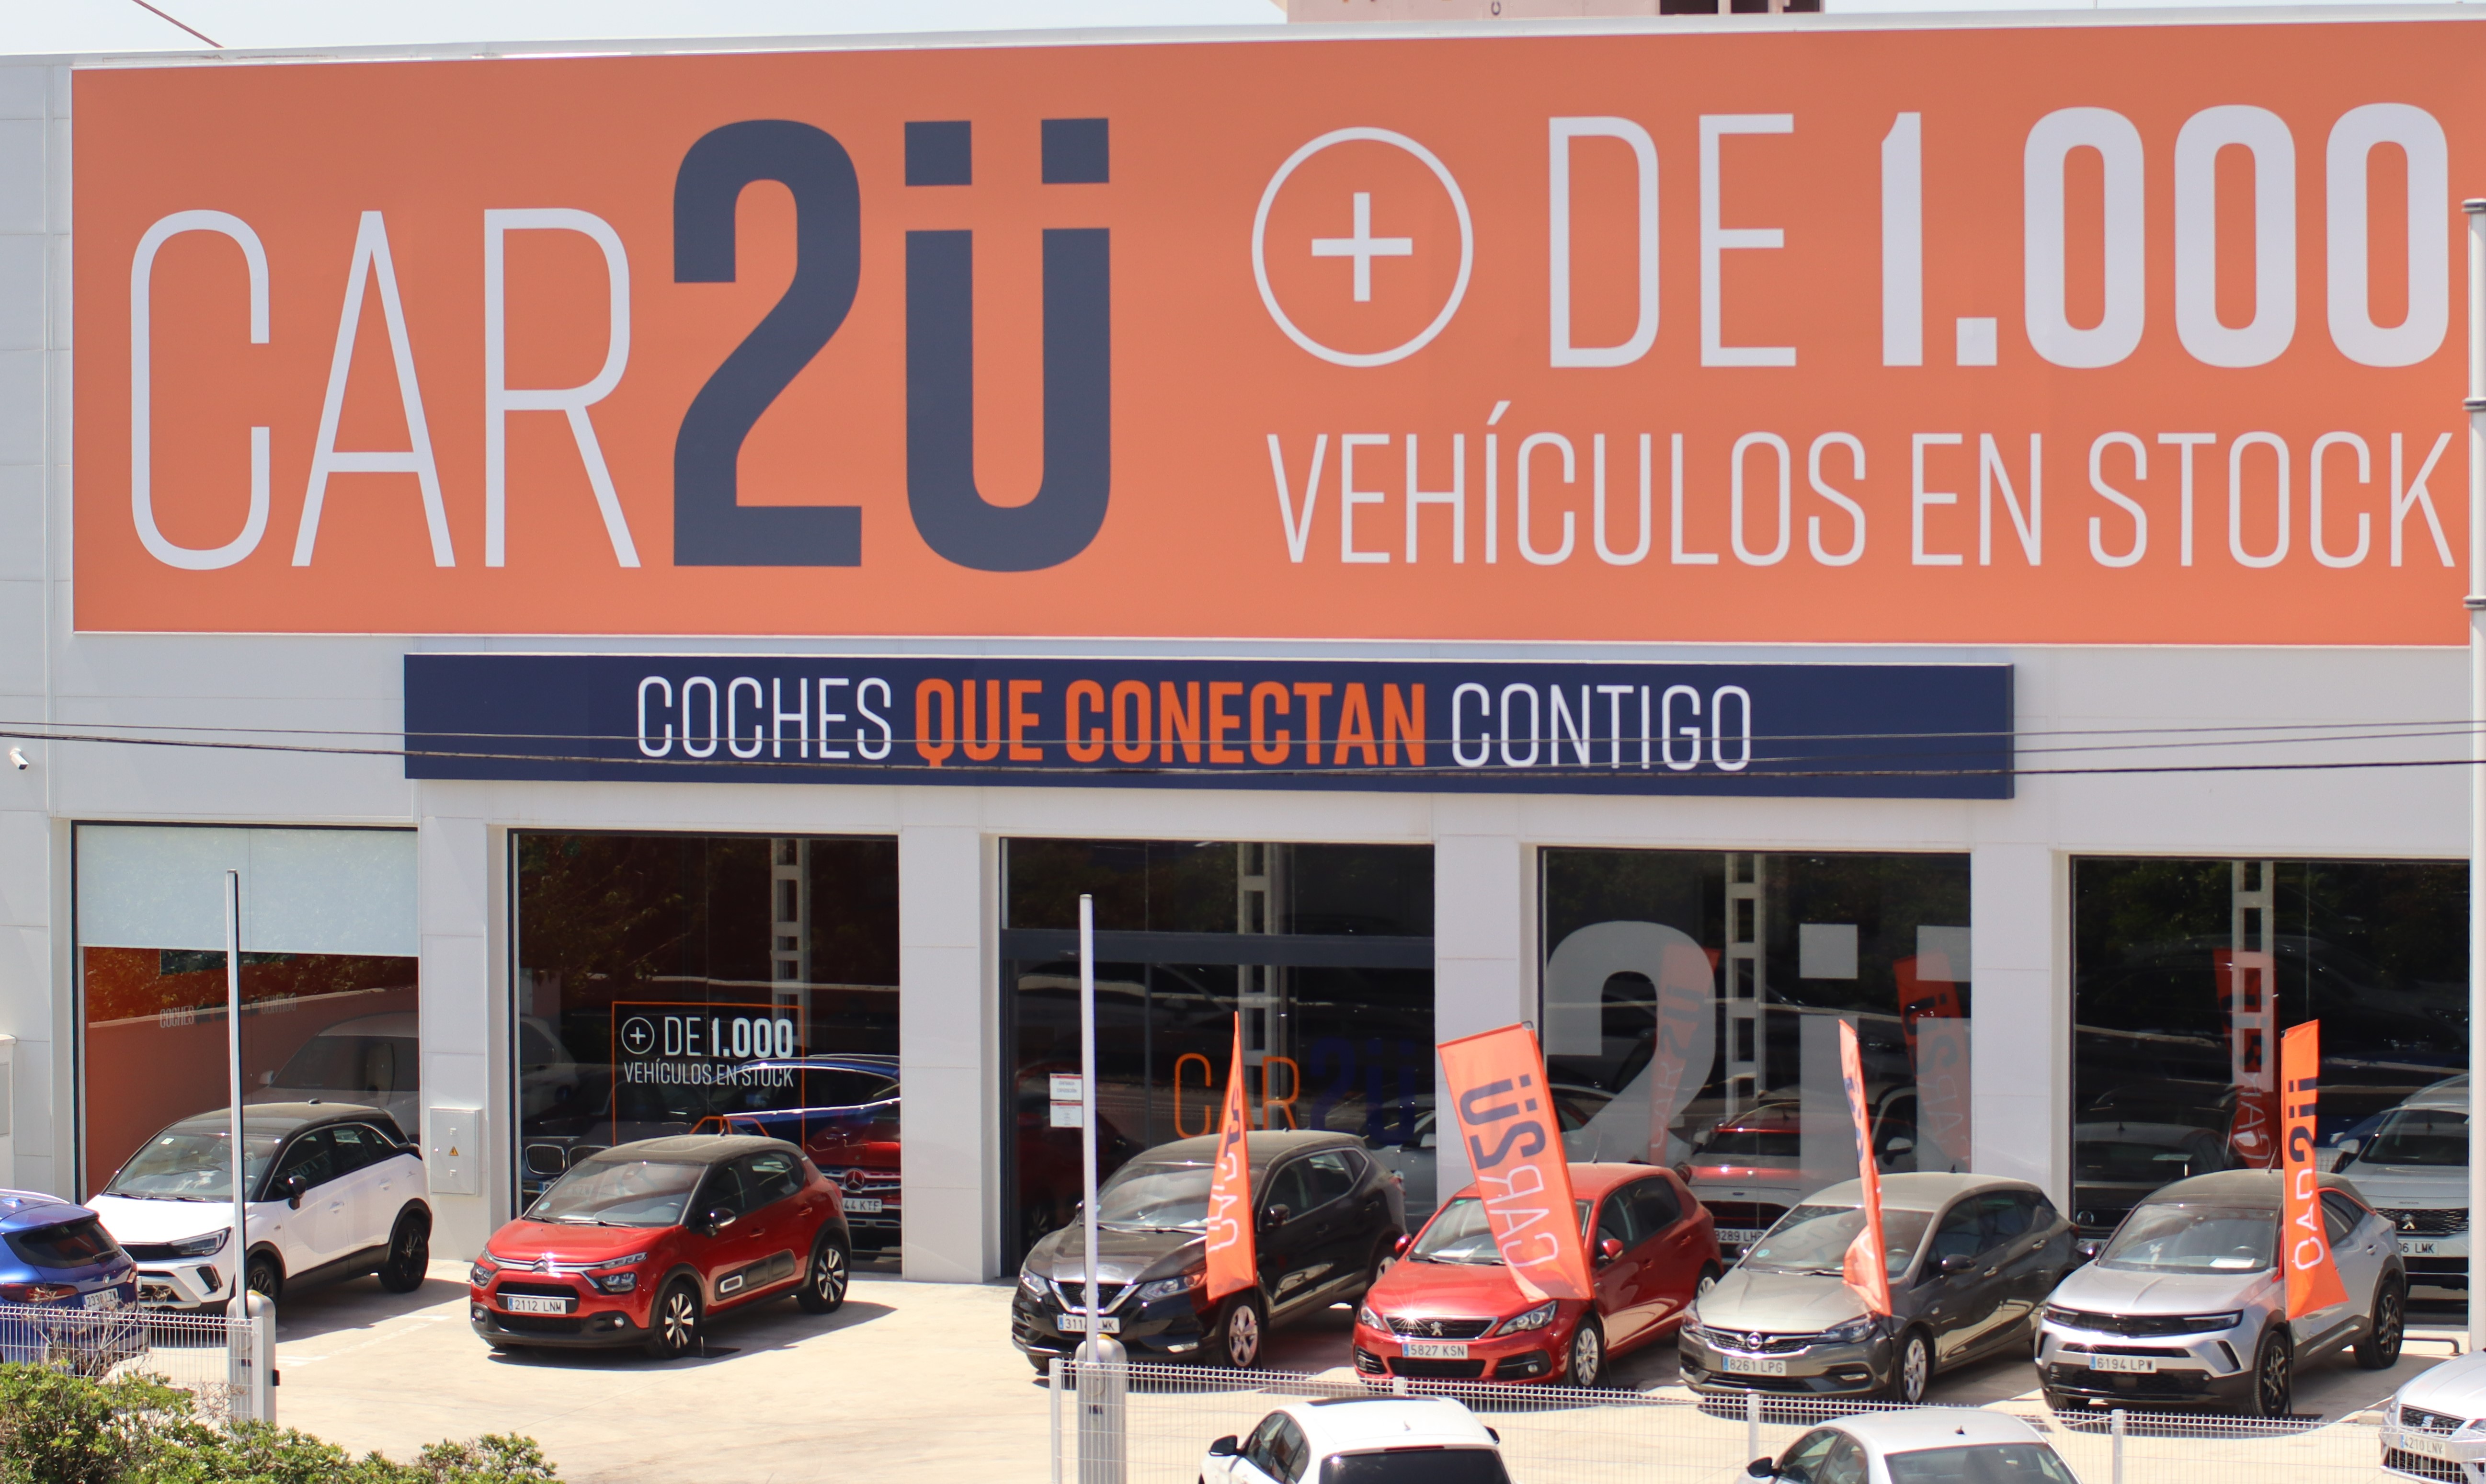 CAR2U, la marca de vehículos de ocasión de Almina, lanza una campaña junto a Juan Amodeo